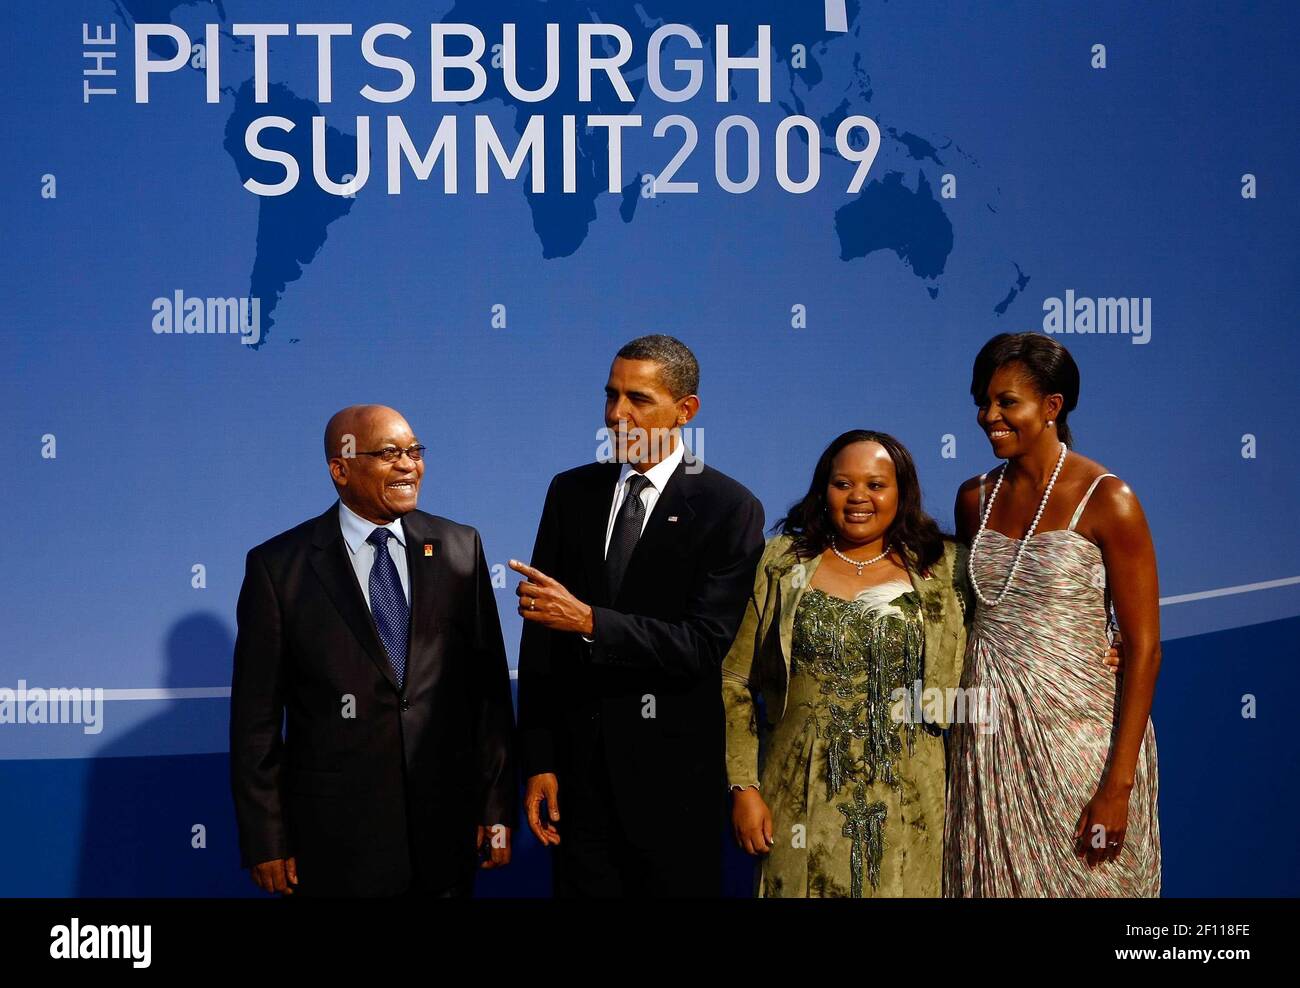 24 de septiembre de 2009 - Pittsburgh, Pensilvania - el presidente de EE.UU. Barack Obama (2L) y la primera dama de EE.UU. Michelle Obama (R) dan la bienvenida al presidente sudafricano Jacob Zuma (L) y a su esposa Nompumelelo Ntuli a la cena inaugural para los líderes del G-20 en el Conservatorio Phipps el 24 de septiembre de 2009 en Pittsburgh, Pensilvania. Los jefes de estado de las principales potencias económicas del mundo llegaron hoy para la cumbre de dos días del G-20 celebrada en el Centro de Convenciones David L. Lawrence con el objetivo de promover el crecimiento económico. Crédito de la foto: Win McNamee/Pool/Sipa Press/0909251425 Foto de stock